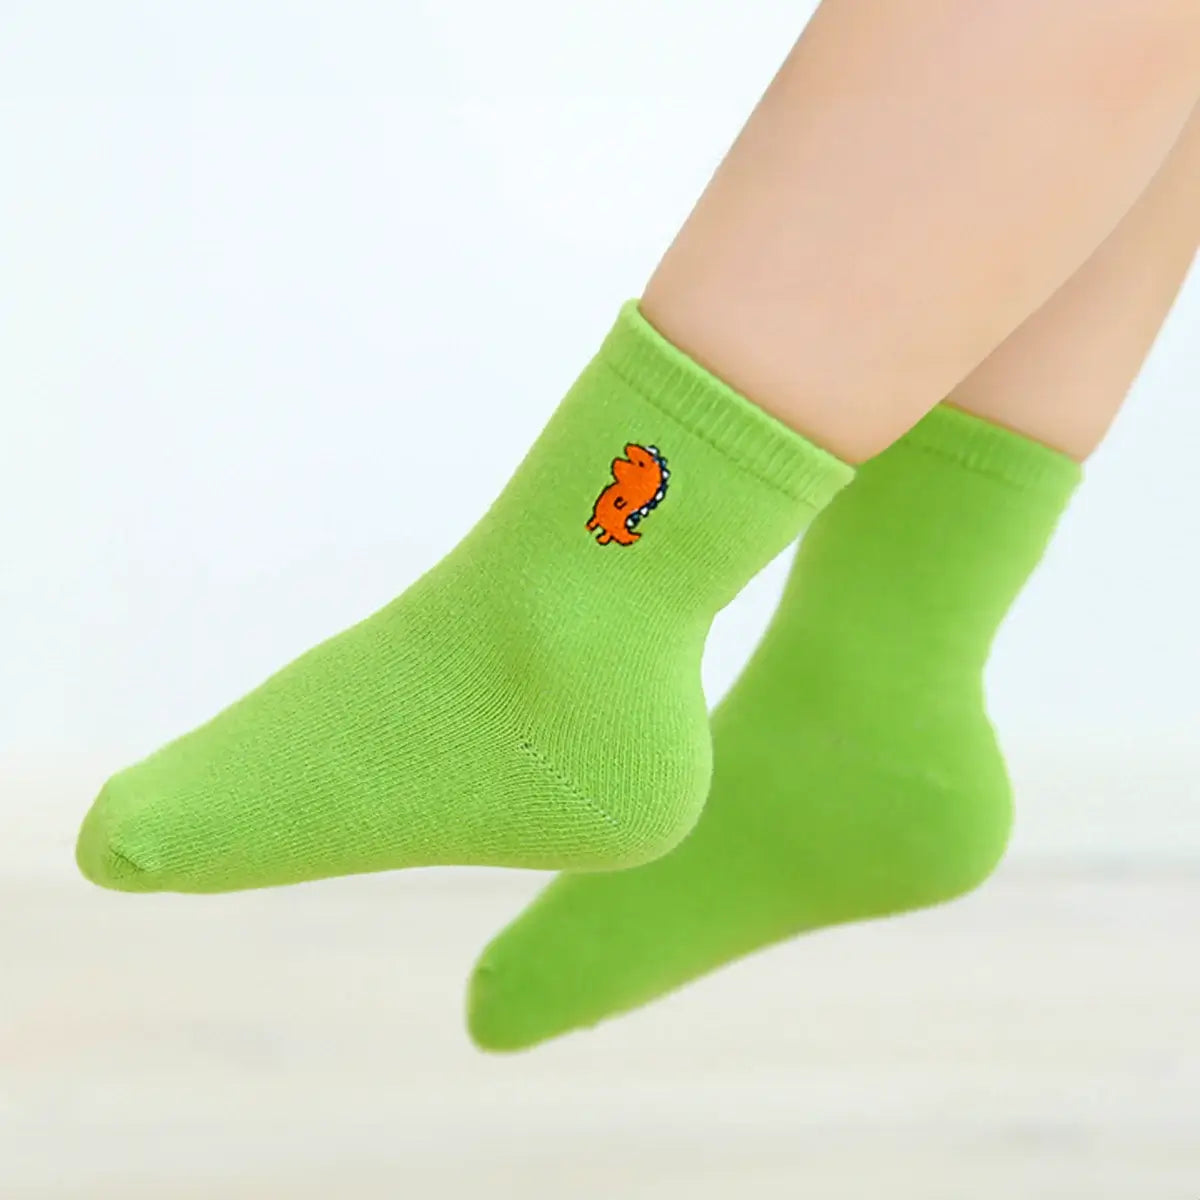 Chaussettes verte longues en coton à motif dinosaure pour enfants | Chaussettes douces et confortables | Disponibles en différentes tailles et couleurs | Un cadeau parfait pour les enfants de tous âges